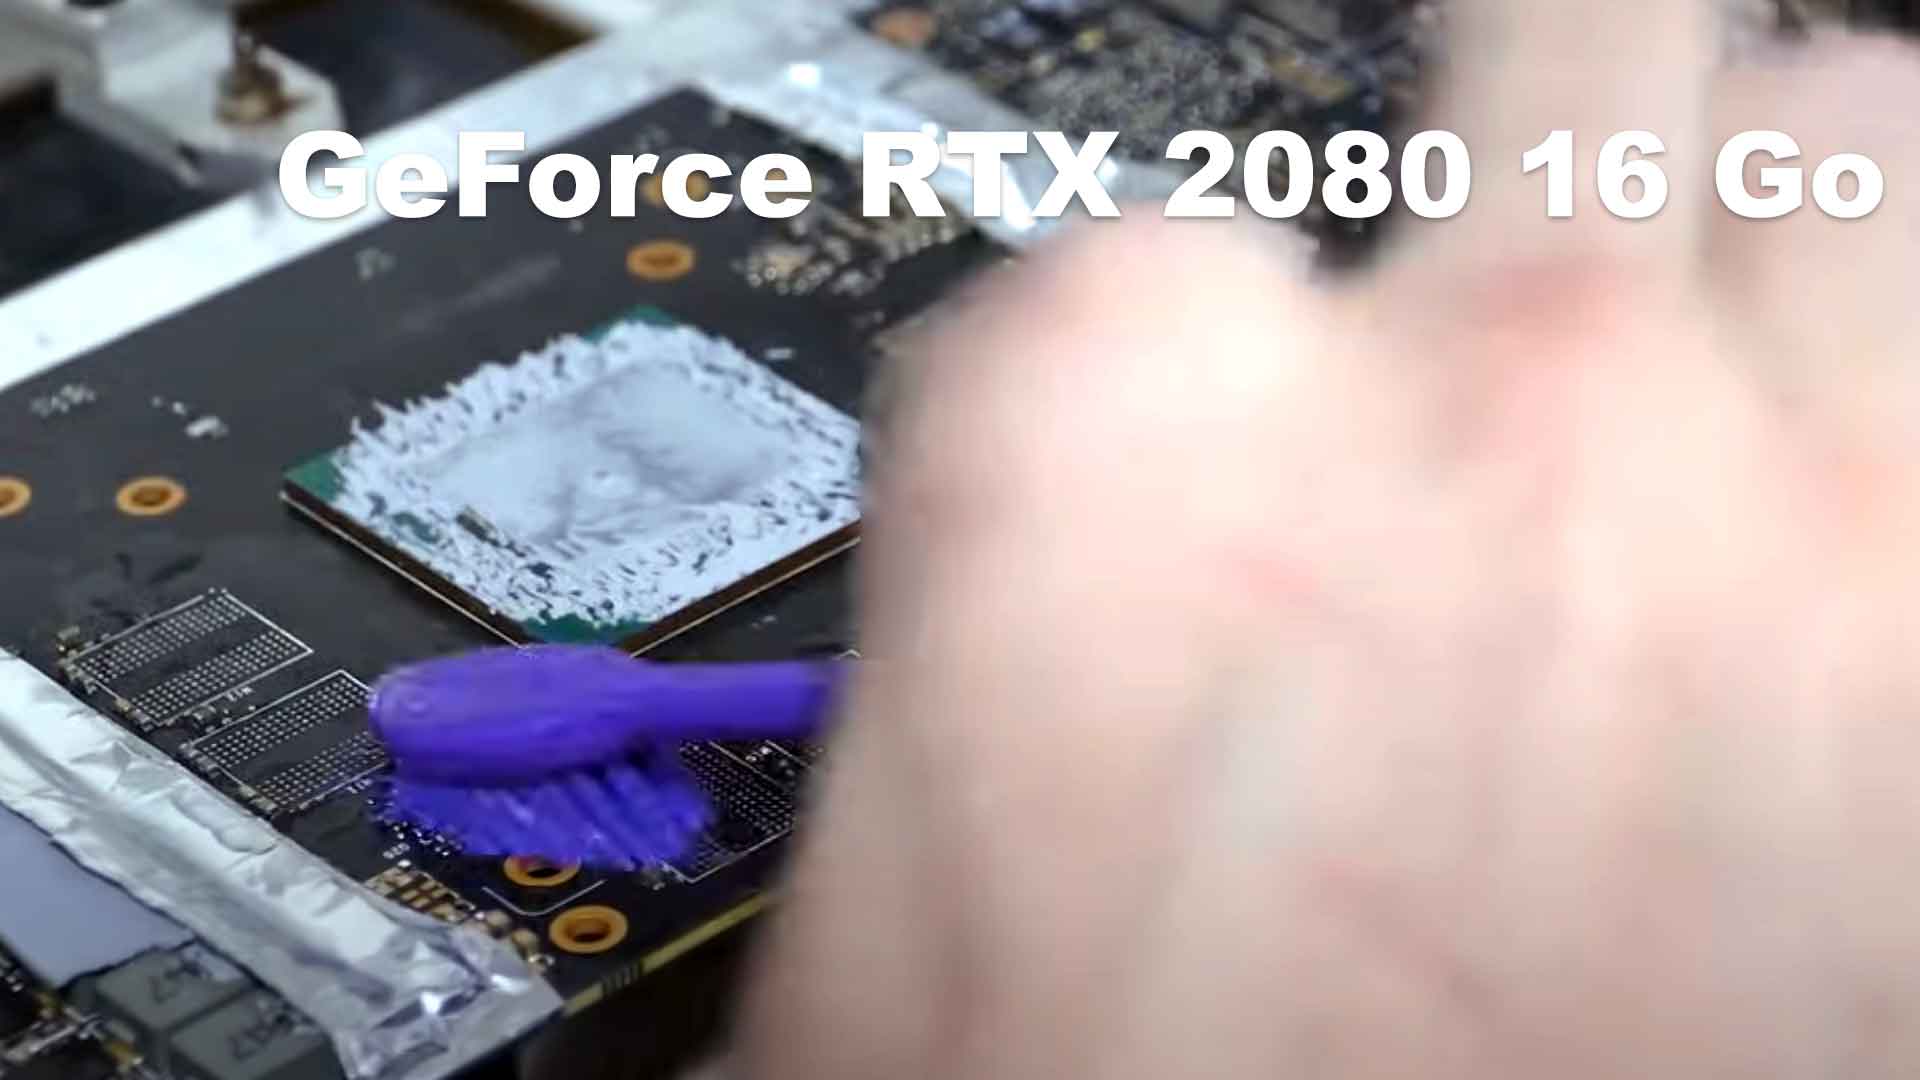 GeForce RTX 2080 16 Go